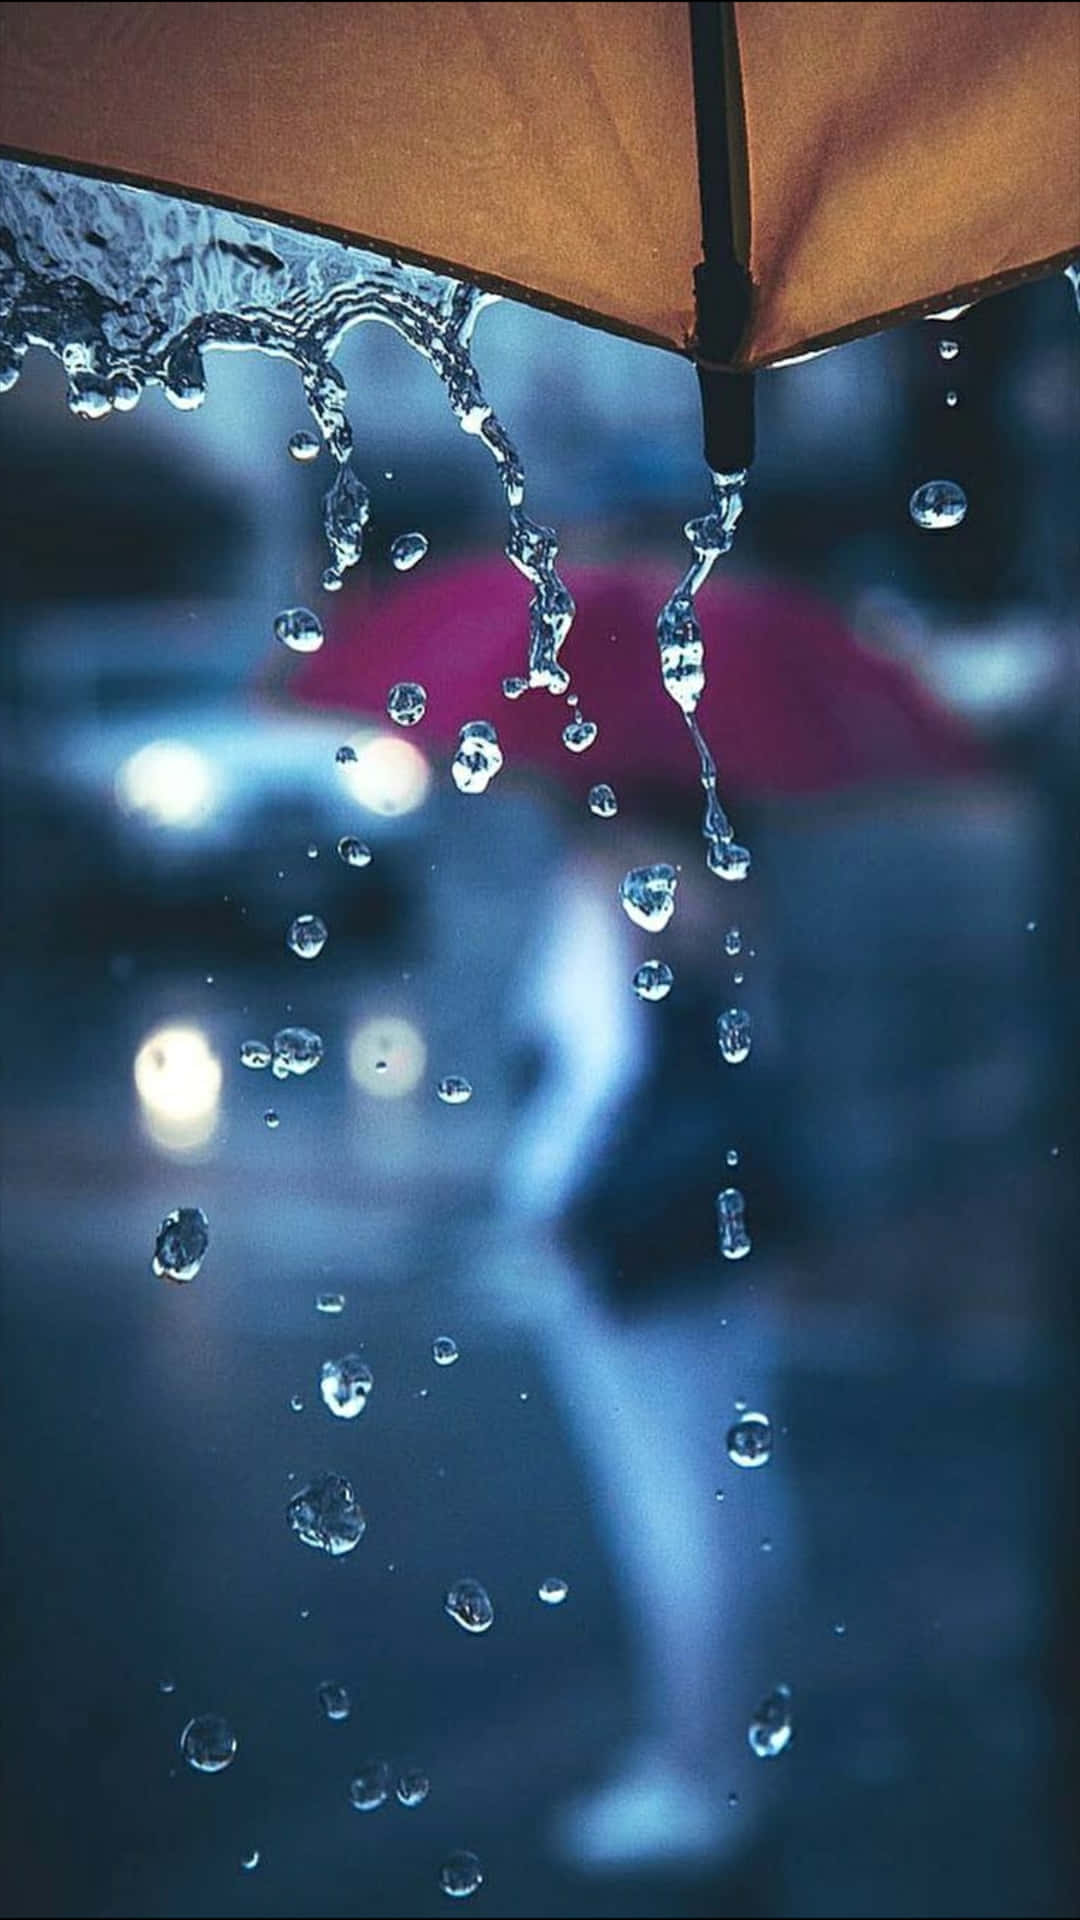 Imagemde Guarda-chuva Com O Contorno Da Chuva Em Um Dia Chuvoso.